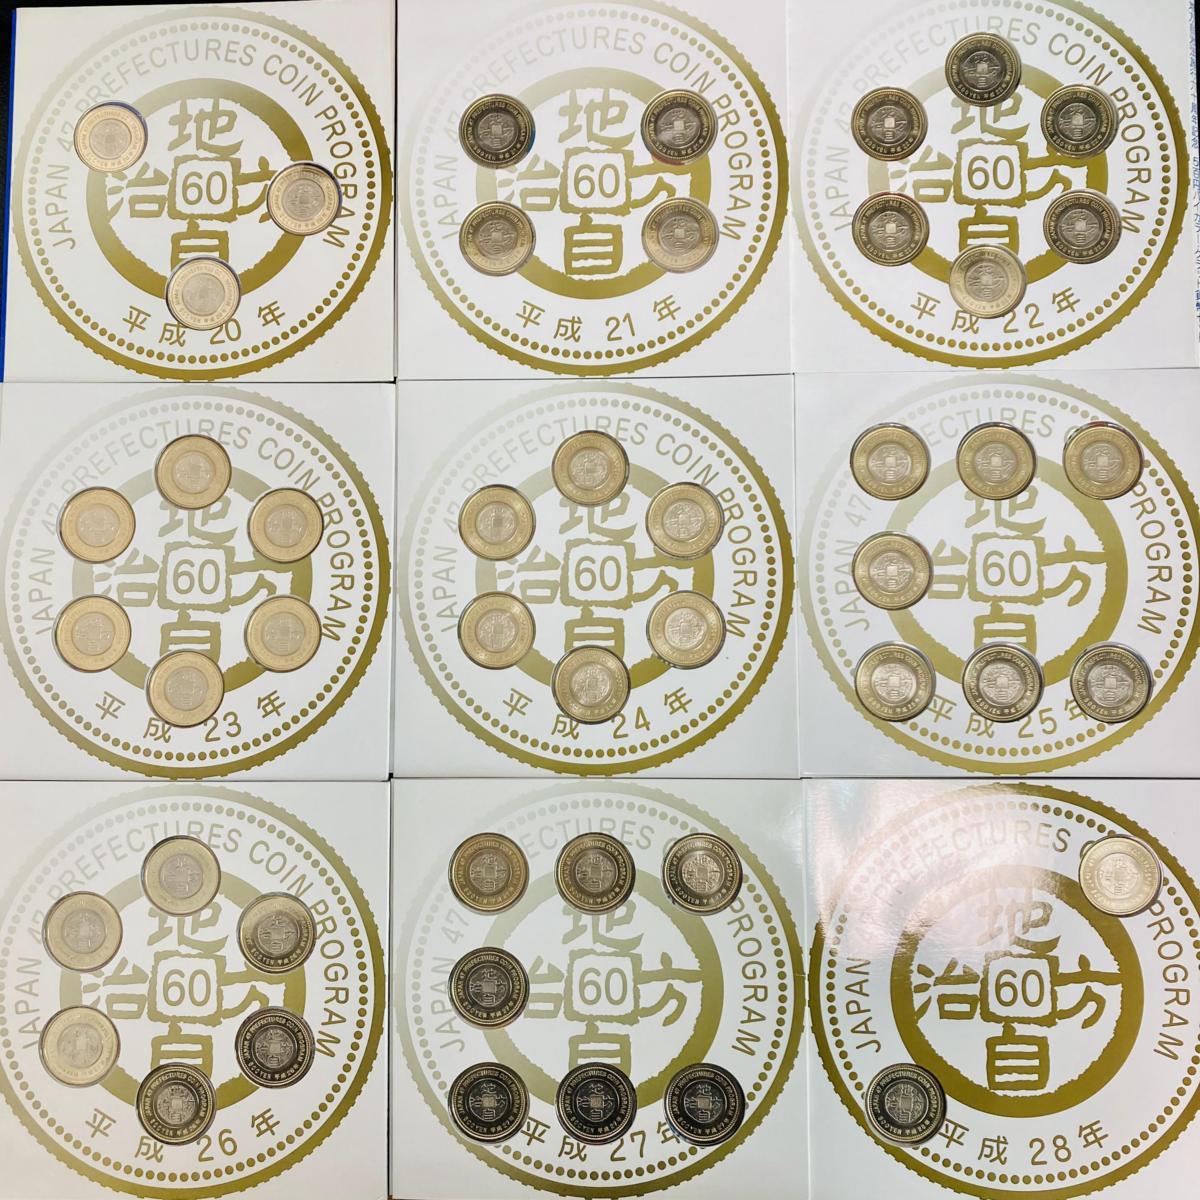 地方自治法施行60周年記念 500円 47都道府県 バイカラークラッド貨幣